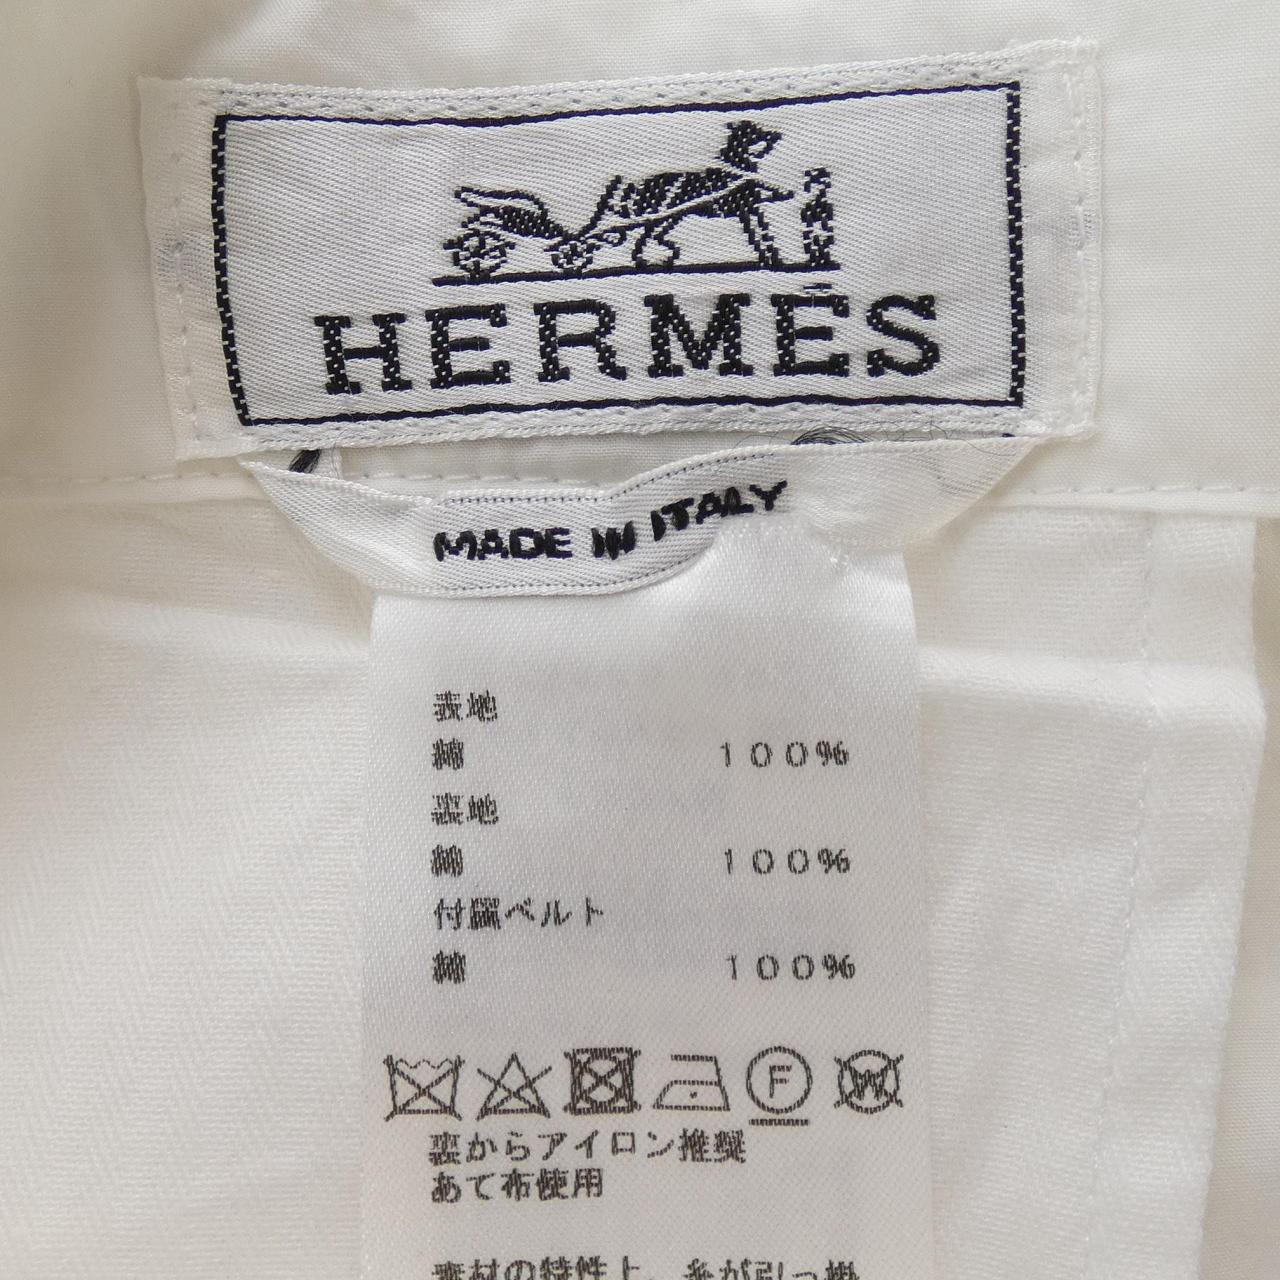 HERMES HERMES Shorts